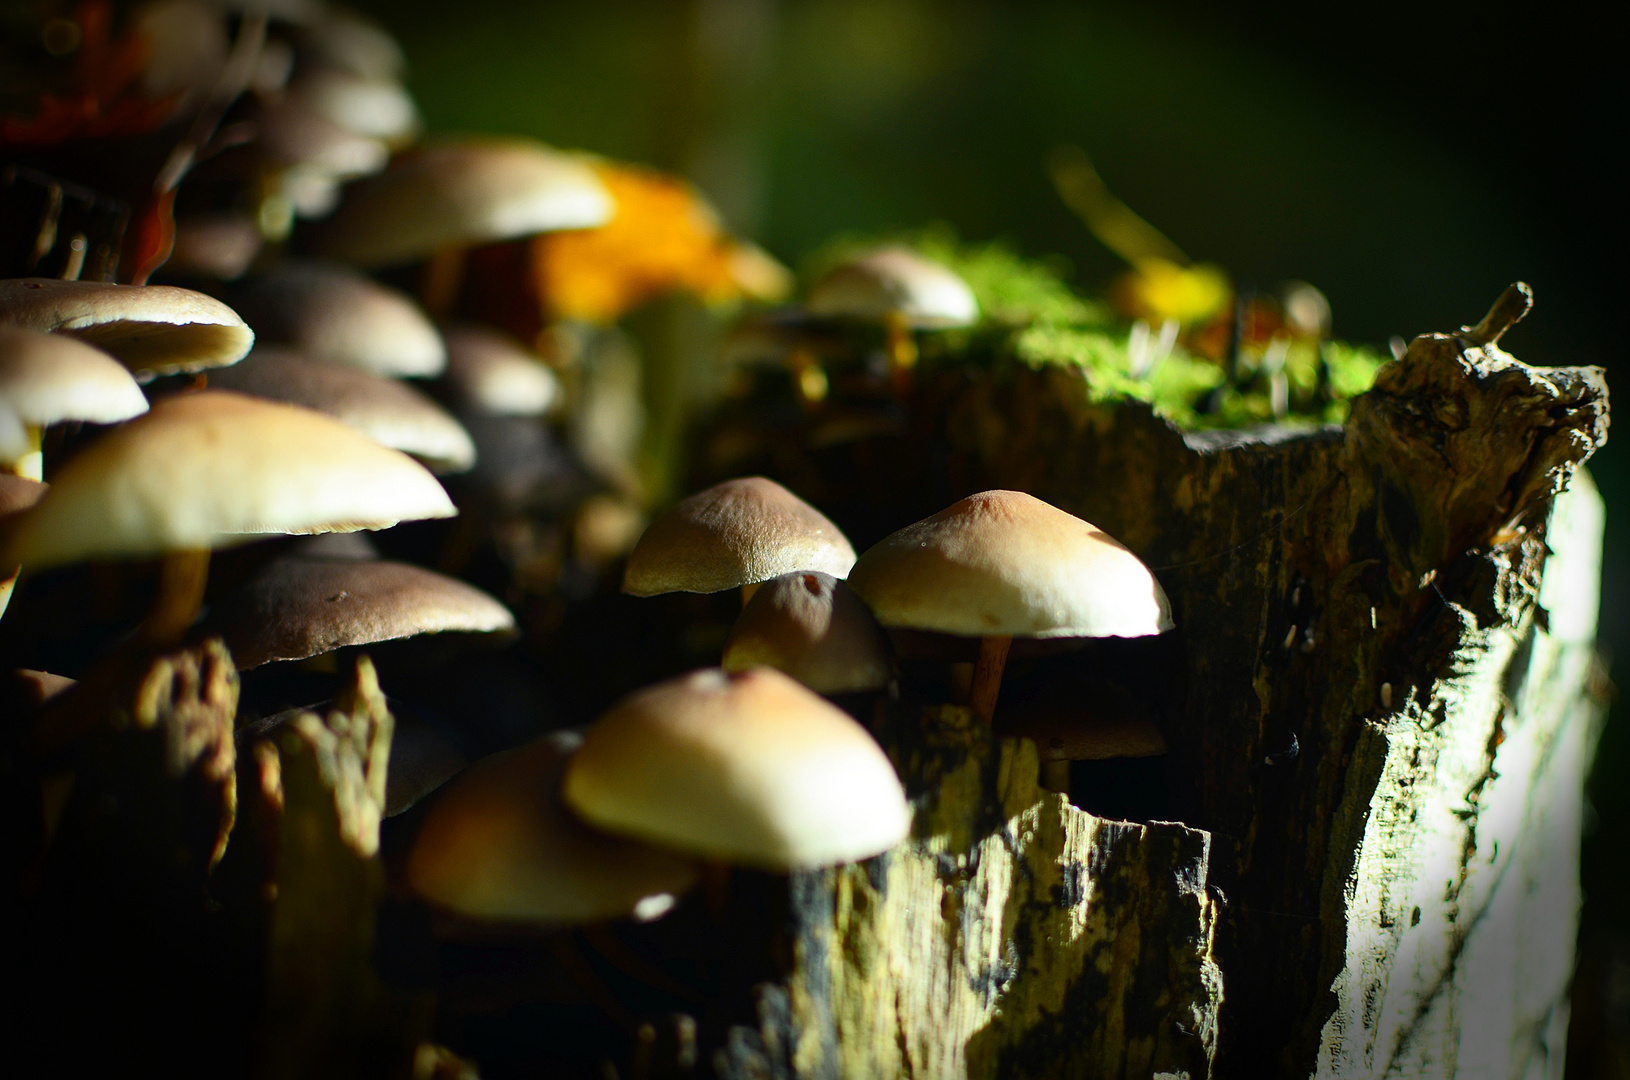 Mushrooms on Wood